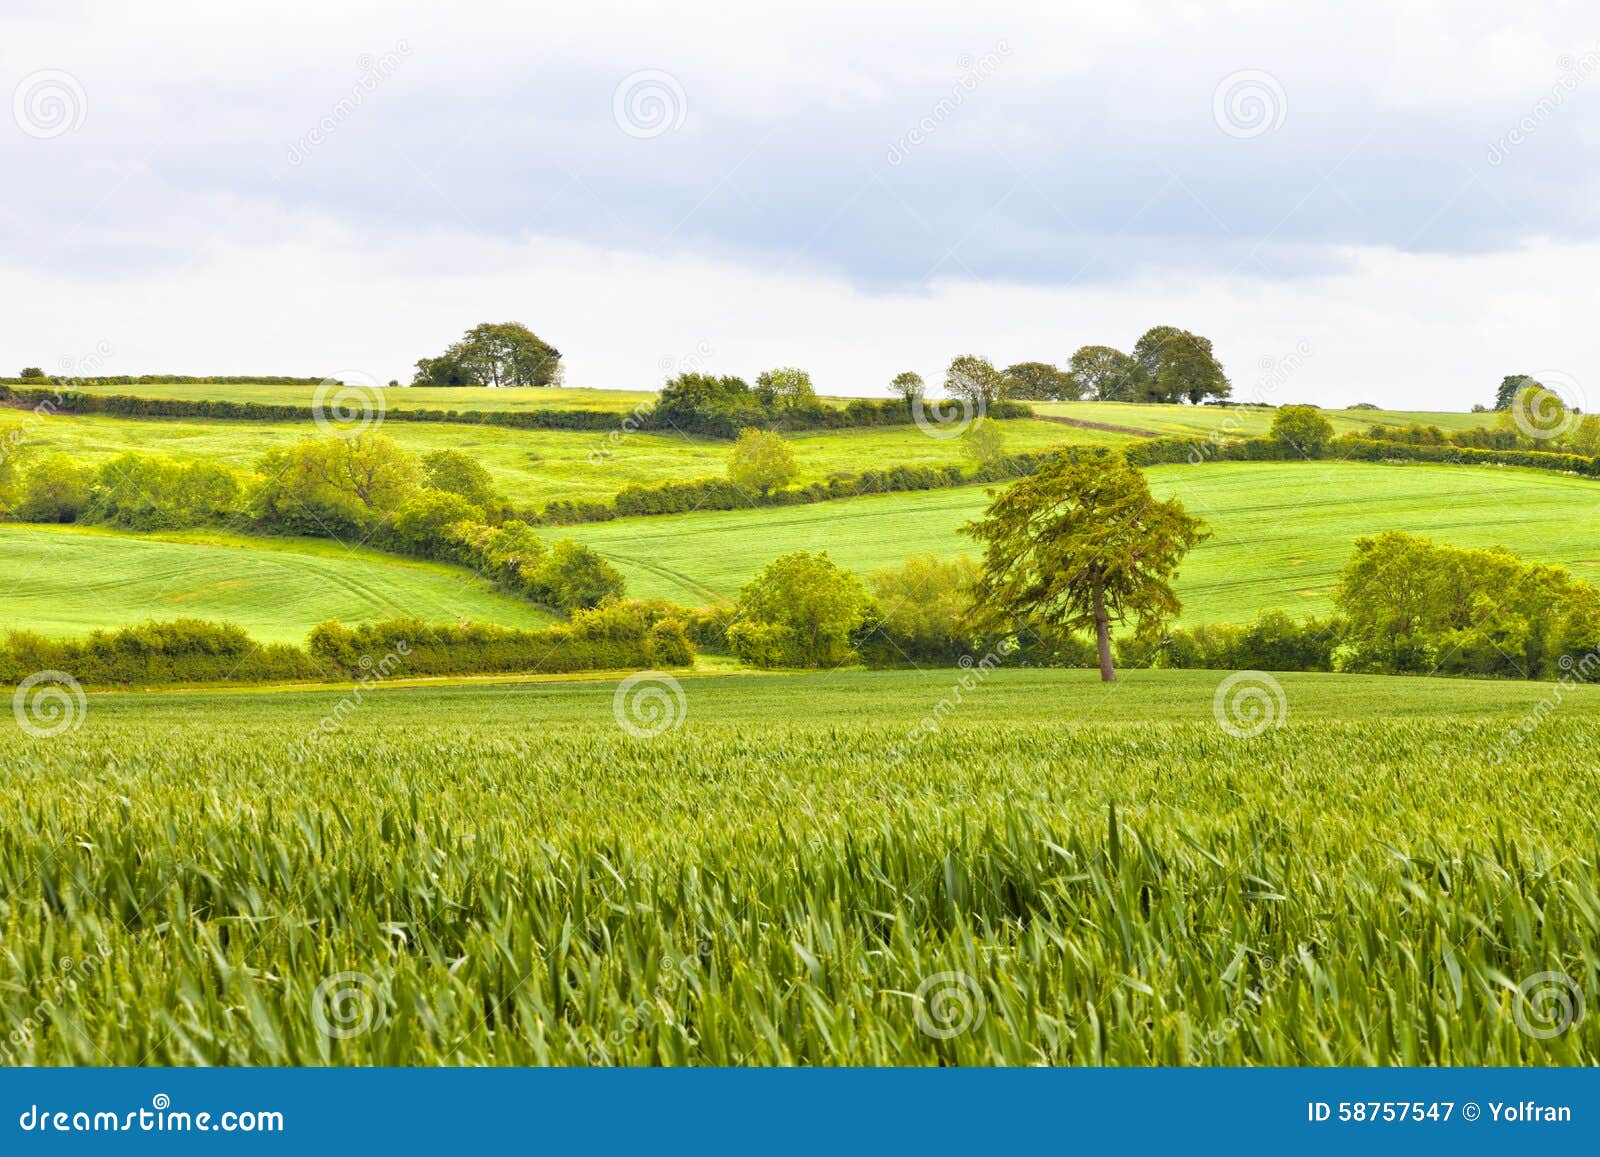 Campos e prados ingleses do campo. Os campos de trigo verdes separaram por linhas da conversão em um campo inglês em um dia nebuloso do verão